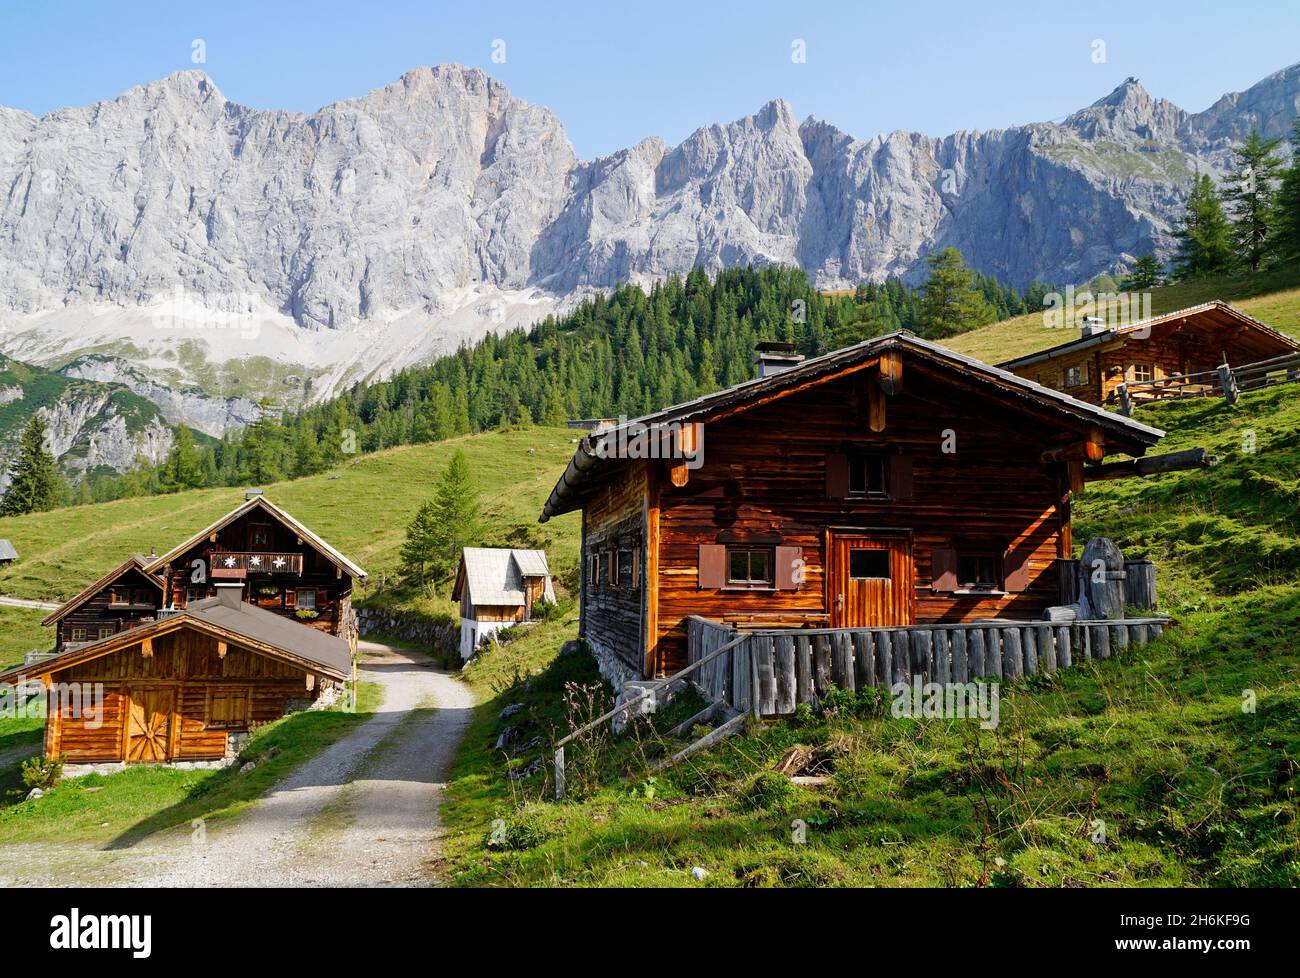 Un chemin menant à travers le paysage alpin avec des chalets en rondins dans la région de Dachstein en Autriche (Neustatt Alm en Styrie) Banque D'Images